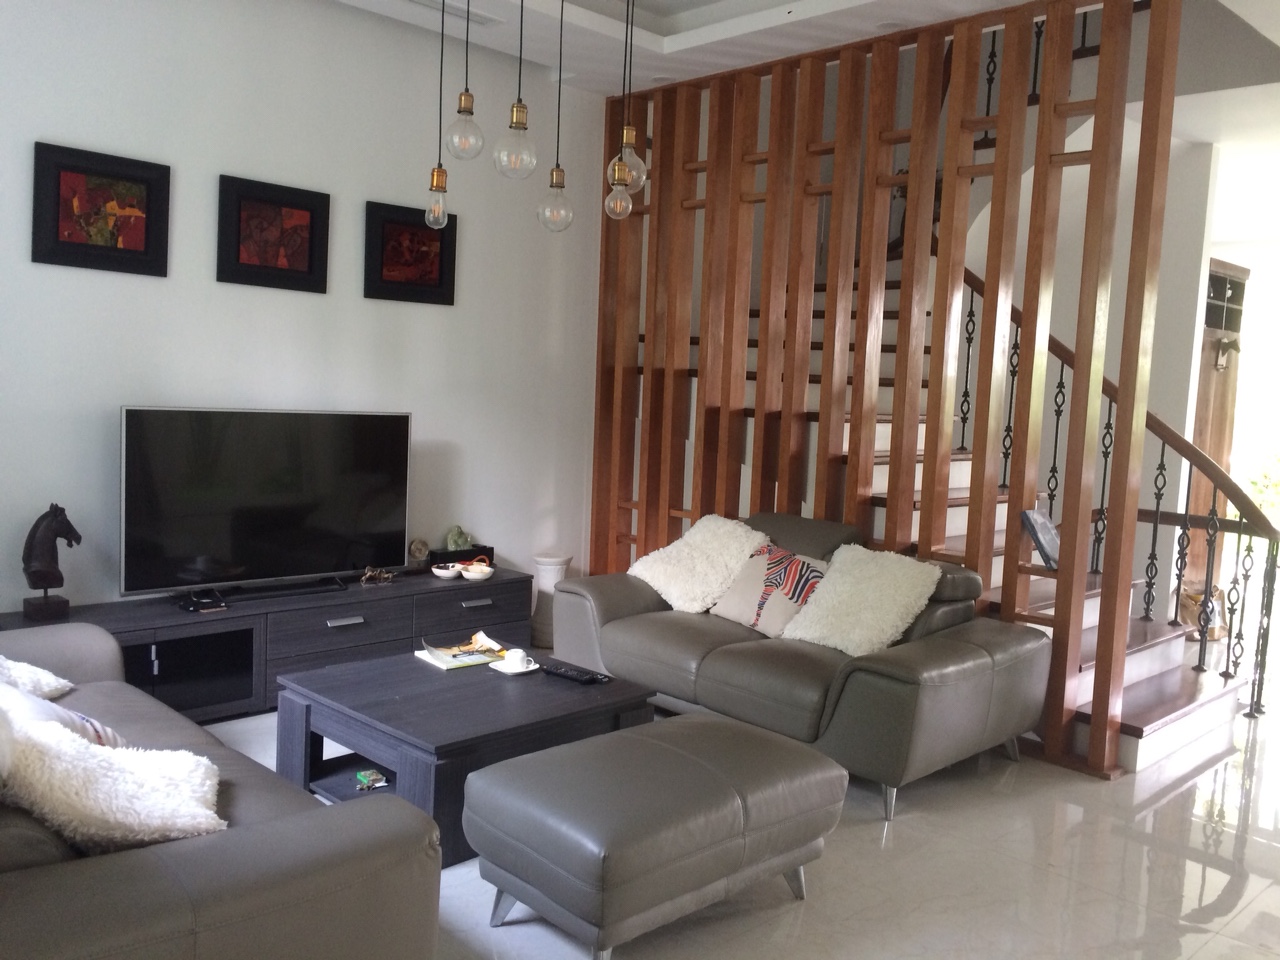 4 bedroom villa for rent in Hoa Sua 1, Vinhomes Riverside with nice basement